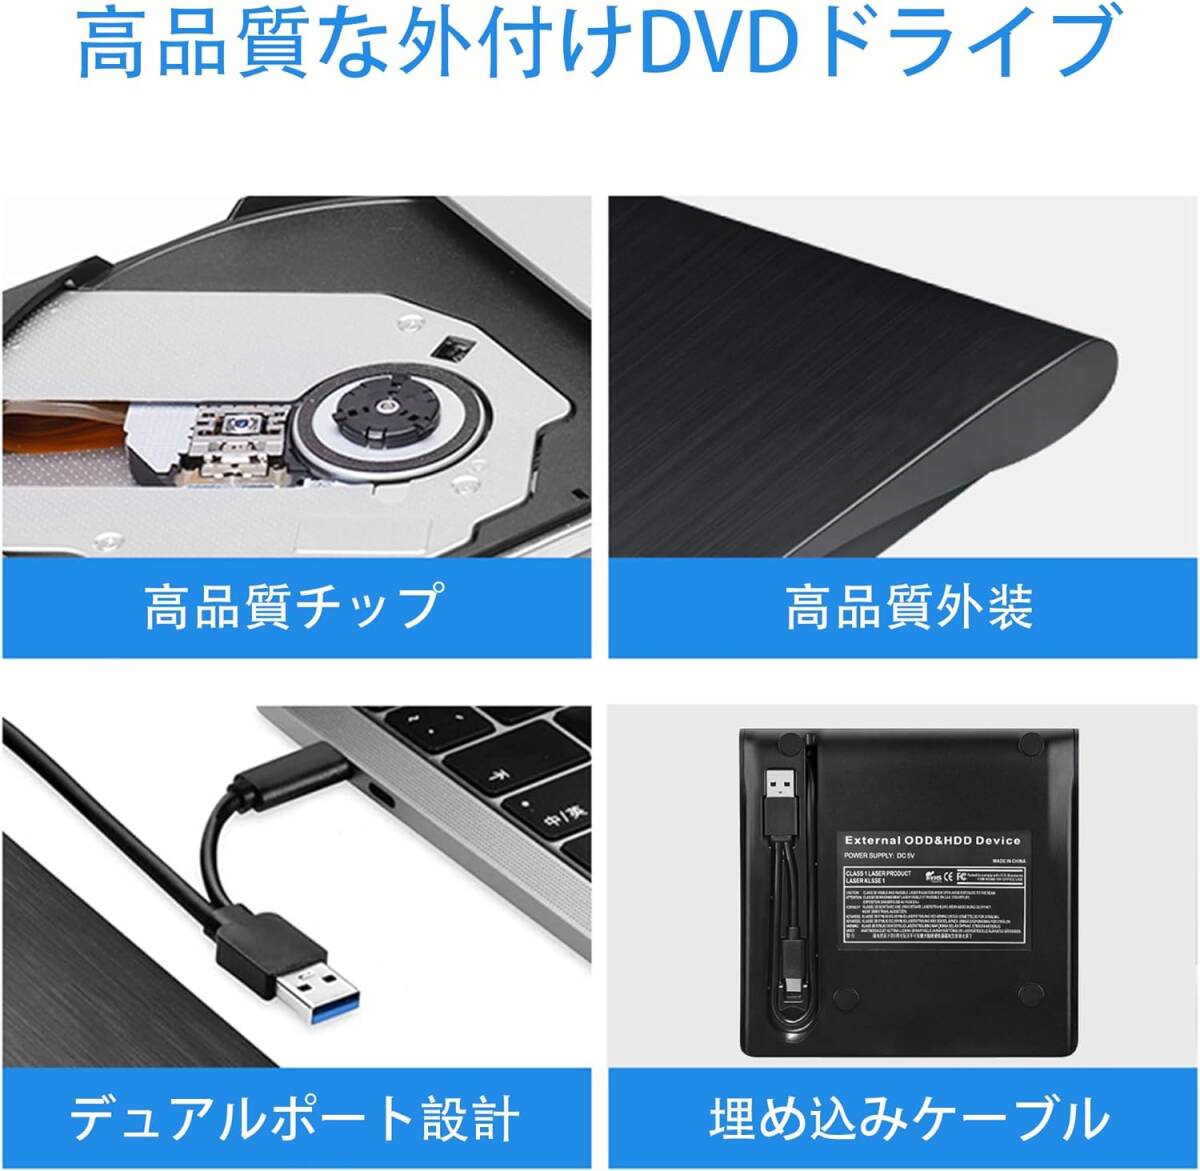 KIMOCA 外付け DVDドライブ 極静音 CD 高速 USB 3.0&Type-Cデュアルポート 外付けCDドライブ 読み出し&書き込み CDドライブ 外付け の画像5